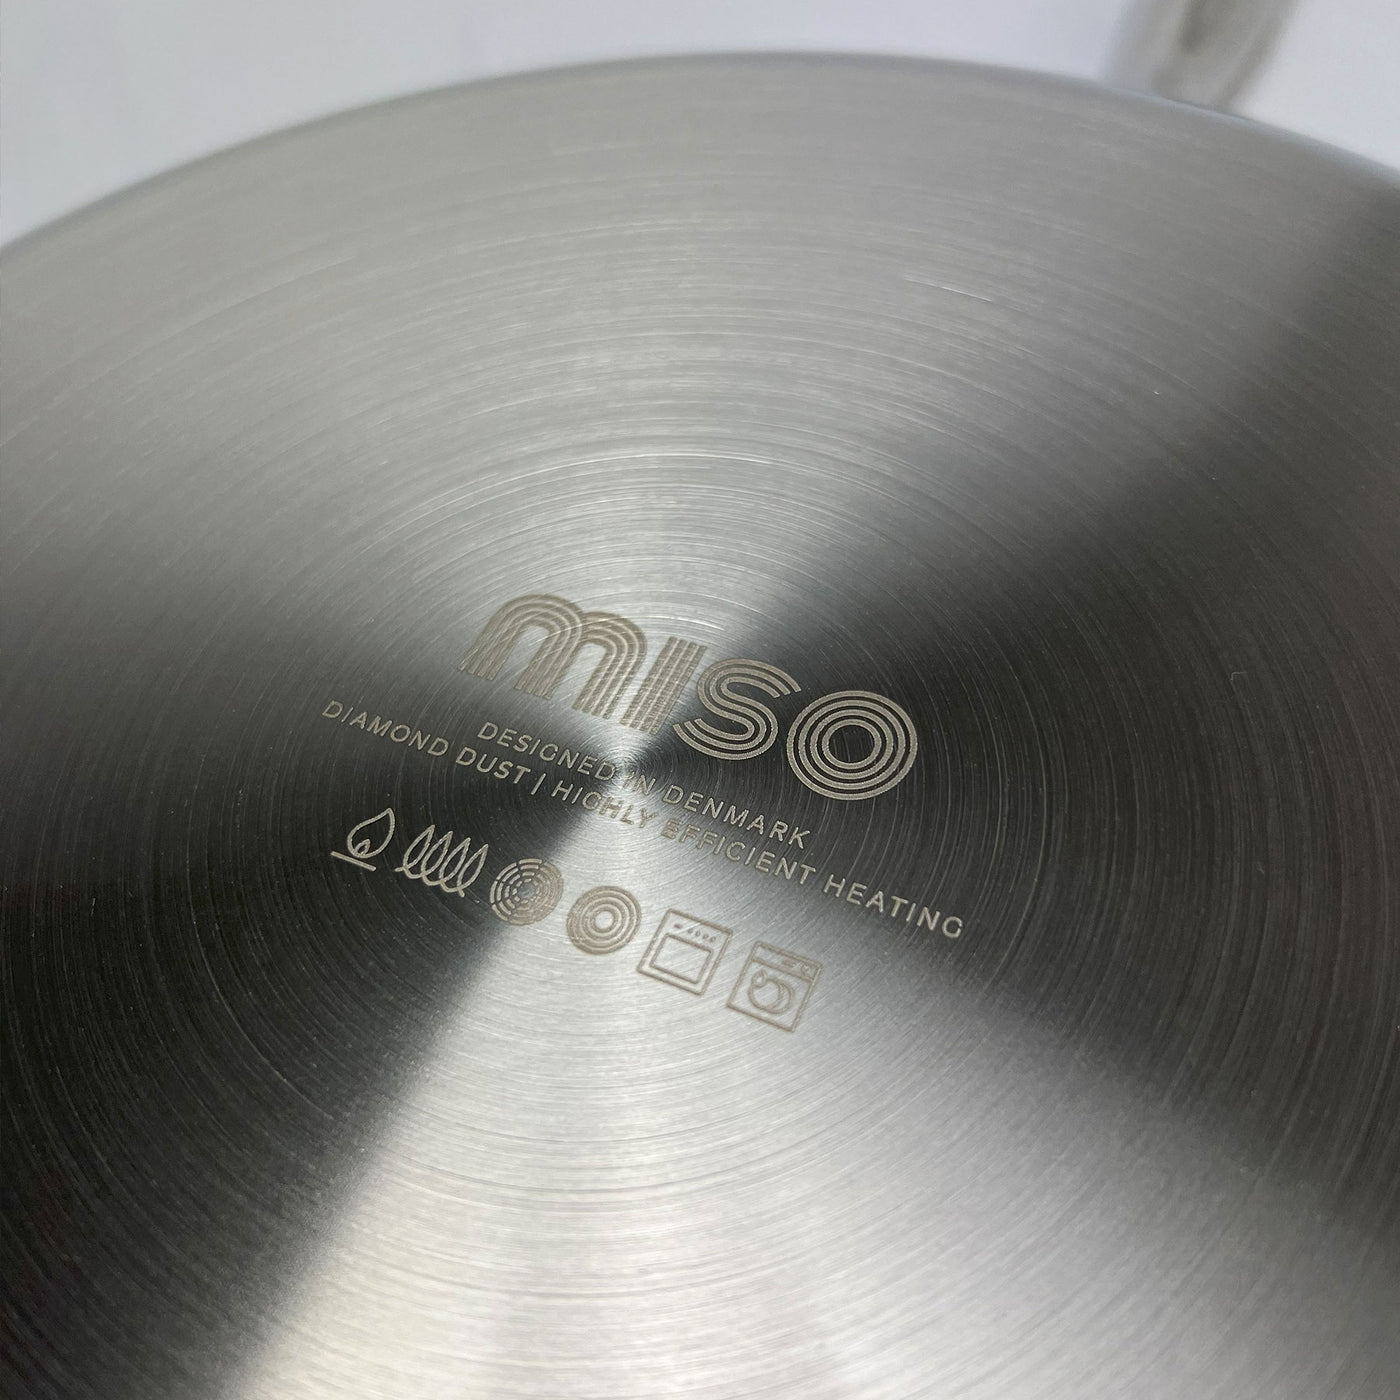 Miso köksredskap - Diamond Dust stekpanna 24+28 cm